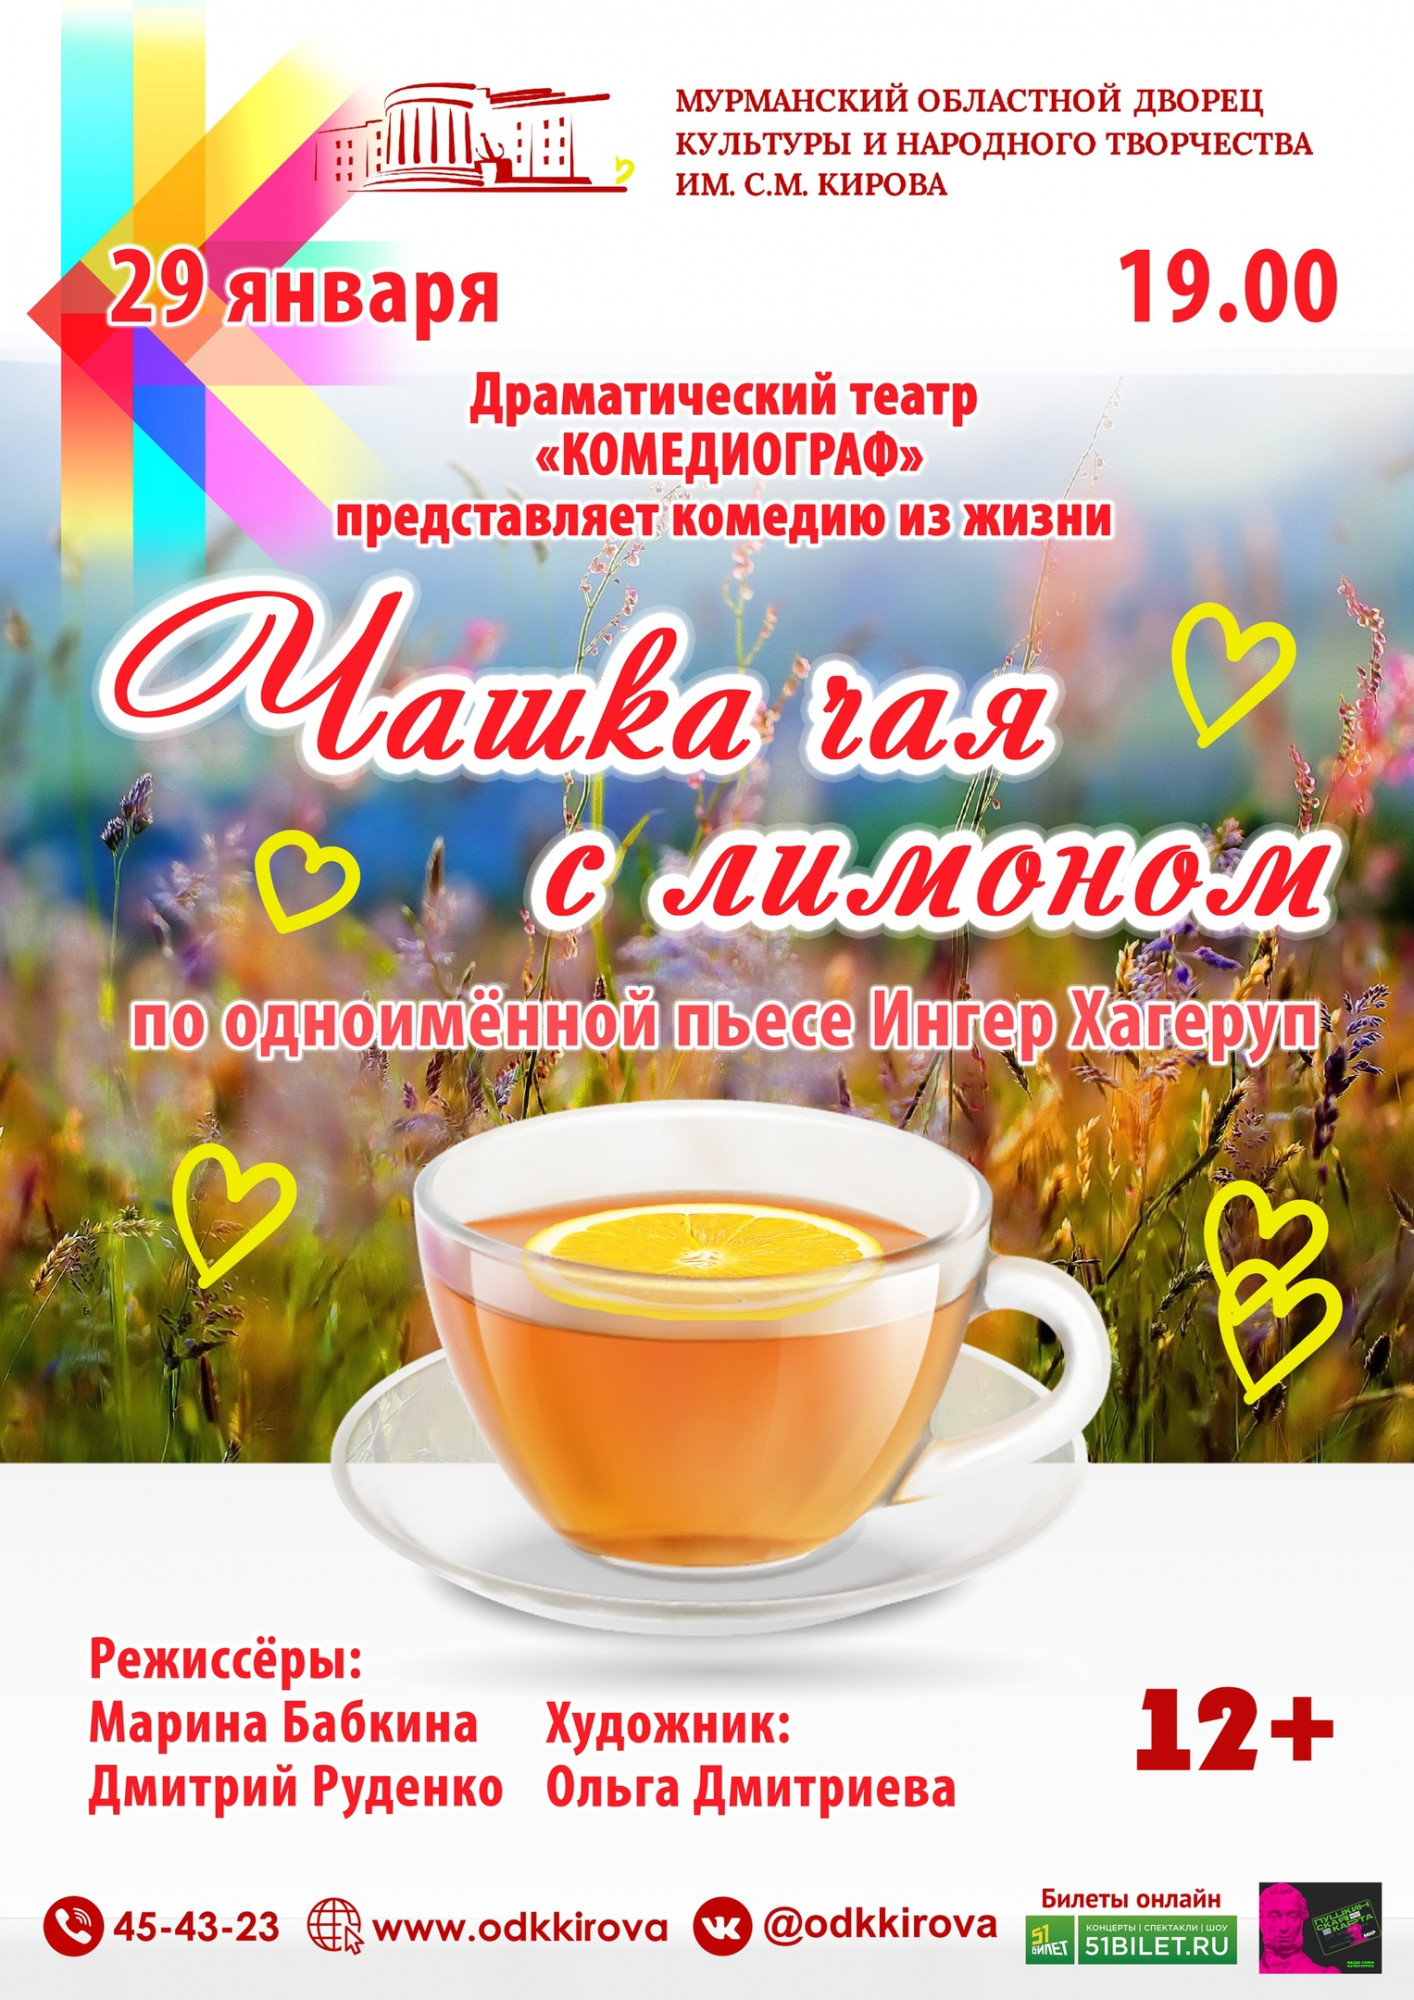 В Мурманске состоится спектакль «Чашка чая с лимоном»